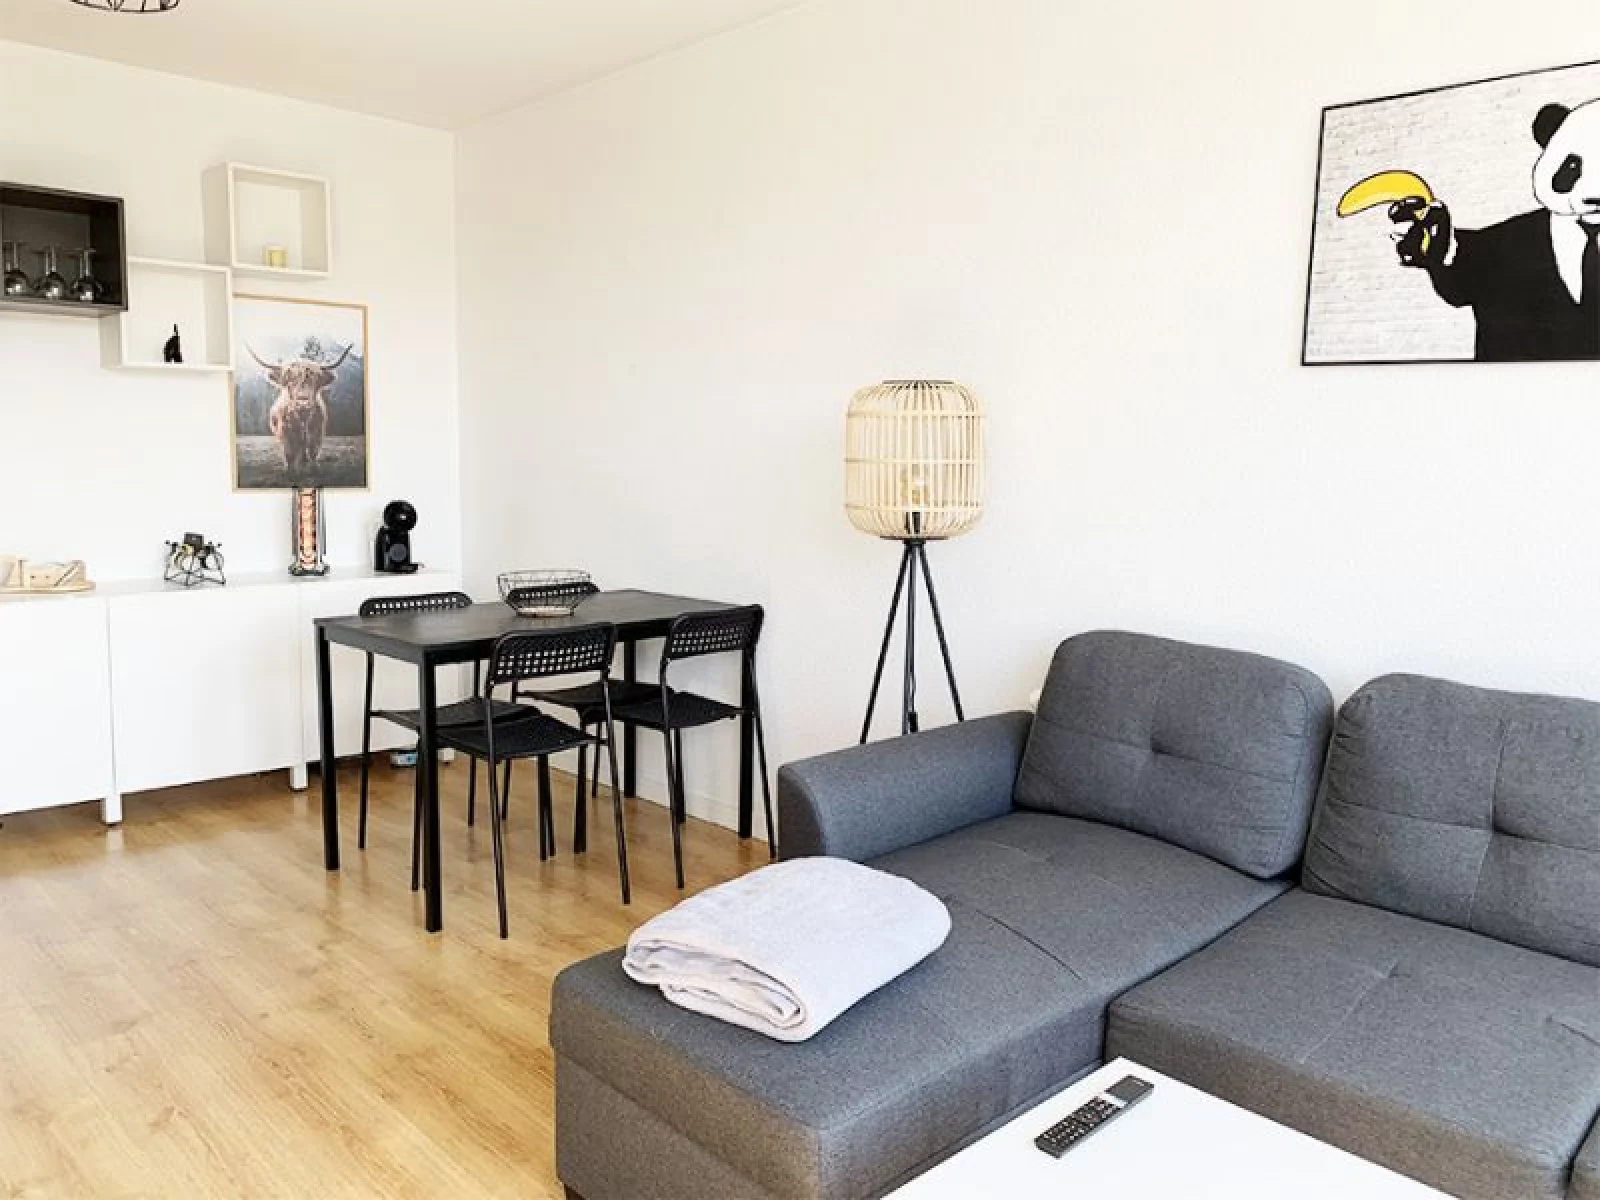  Location appartement meublé 2 pièces 35m² (Bordeaux - Bastide)